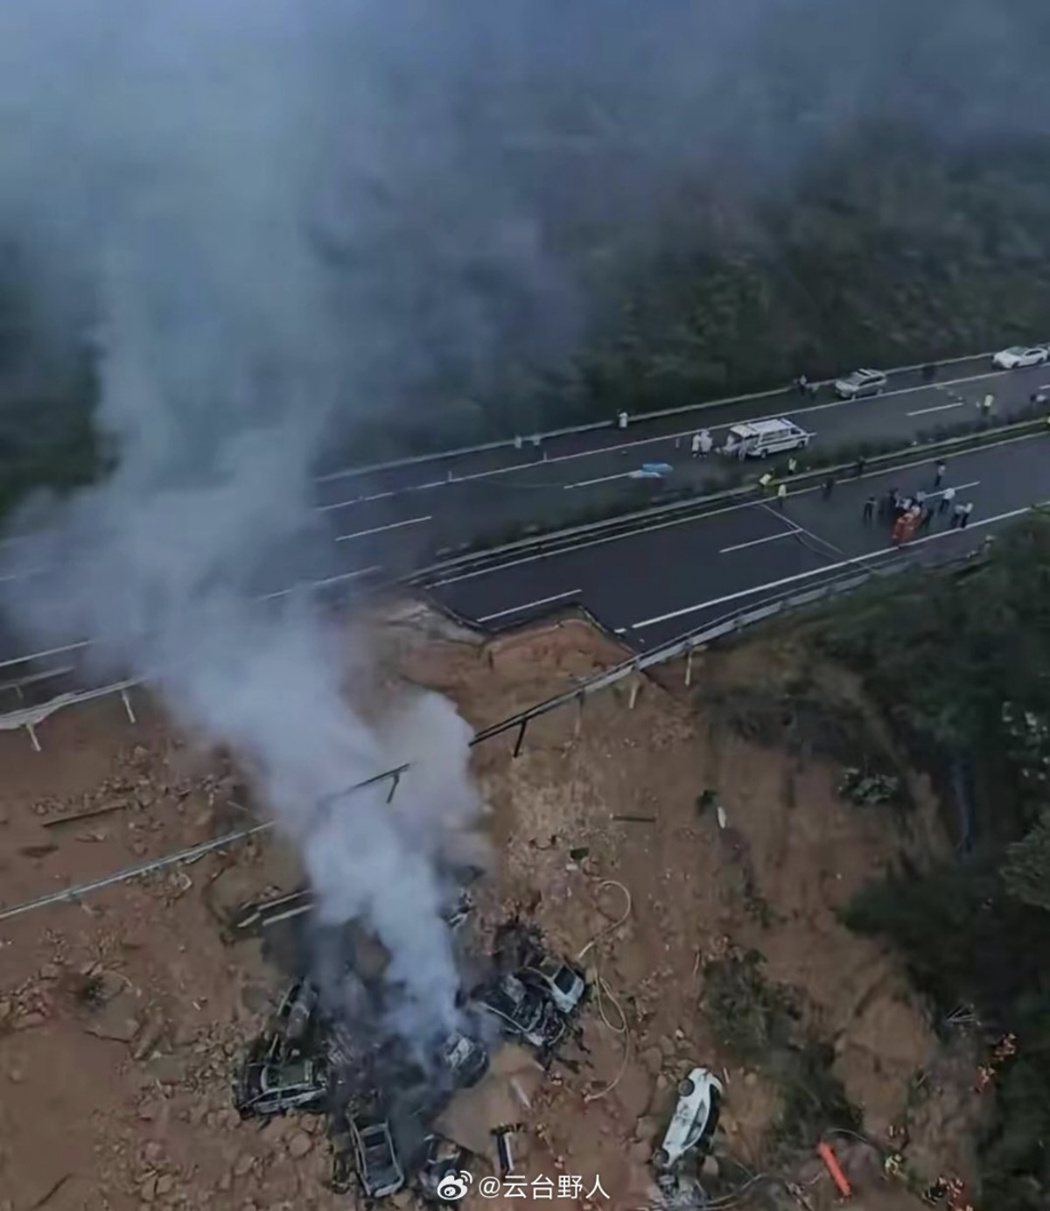 根據微博上流傳的事故現場照片，梅大高速大片路面截斷形成巨大坑洞、多輛落下的汽車燒...